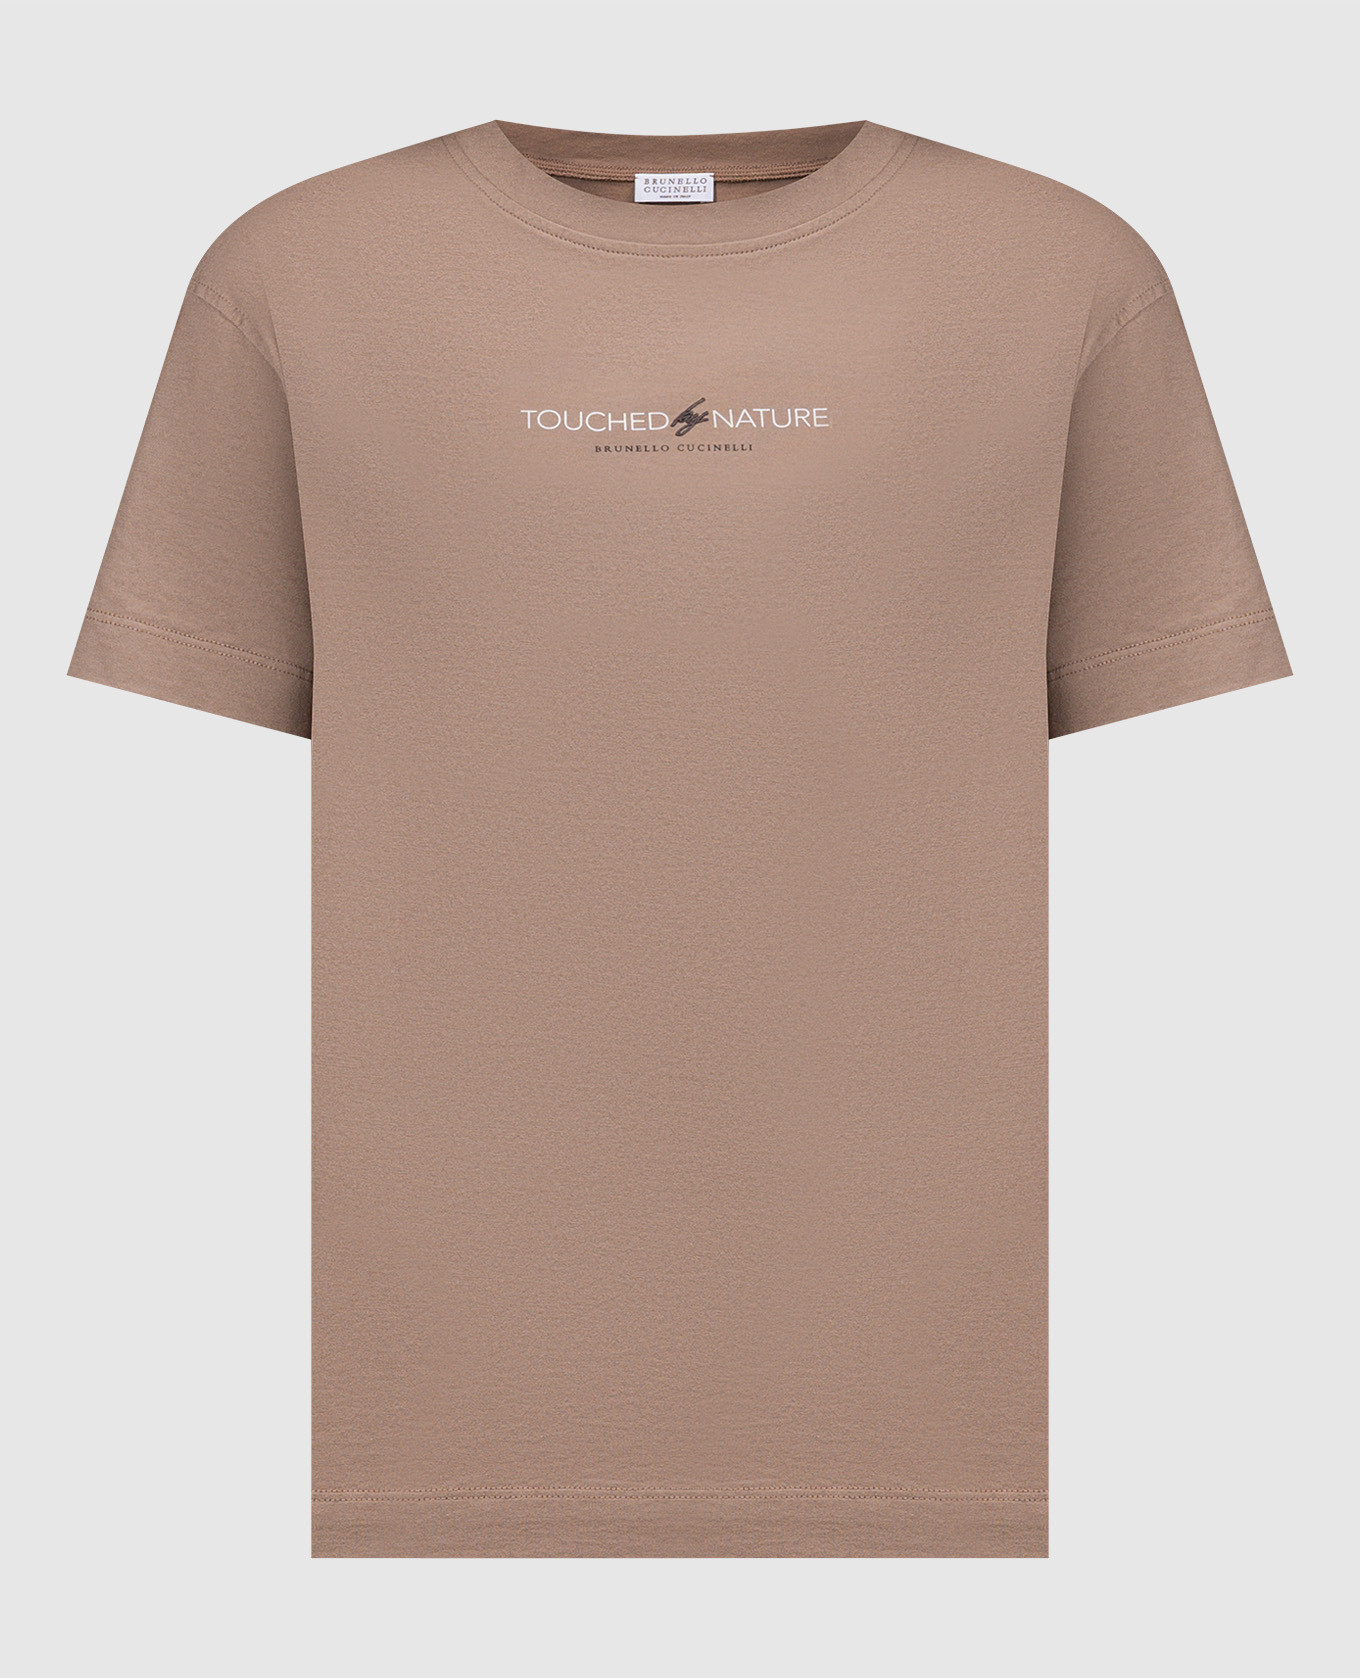 Brown t-shirt with monil chain print